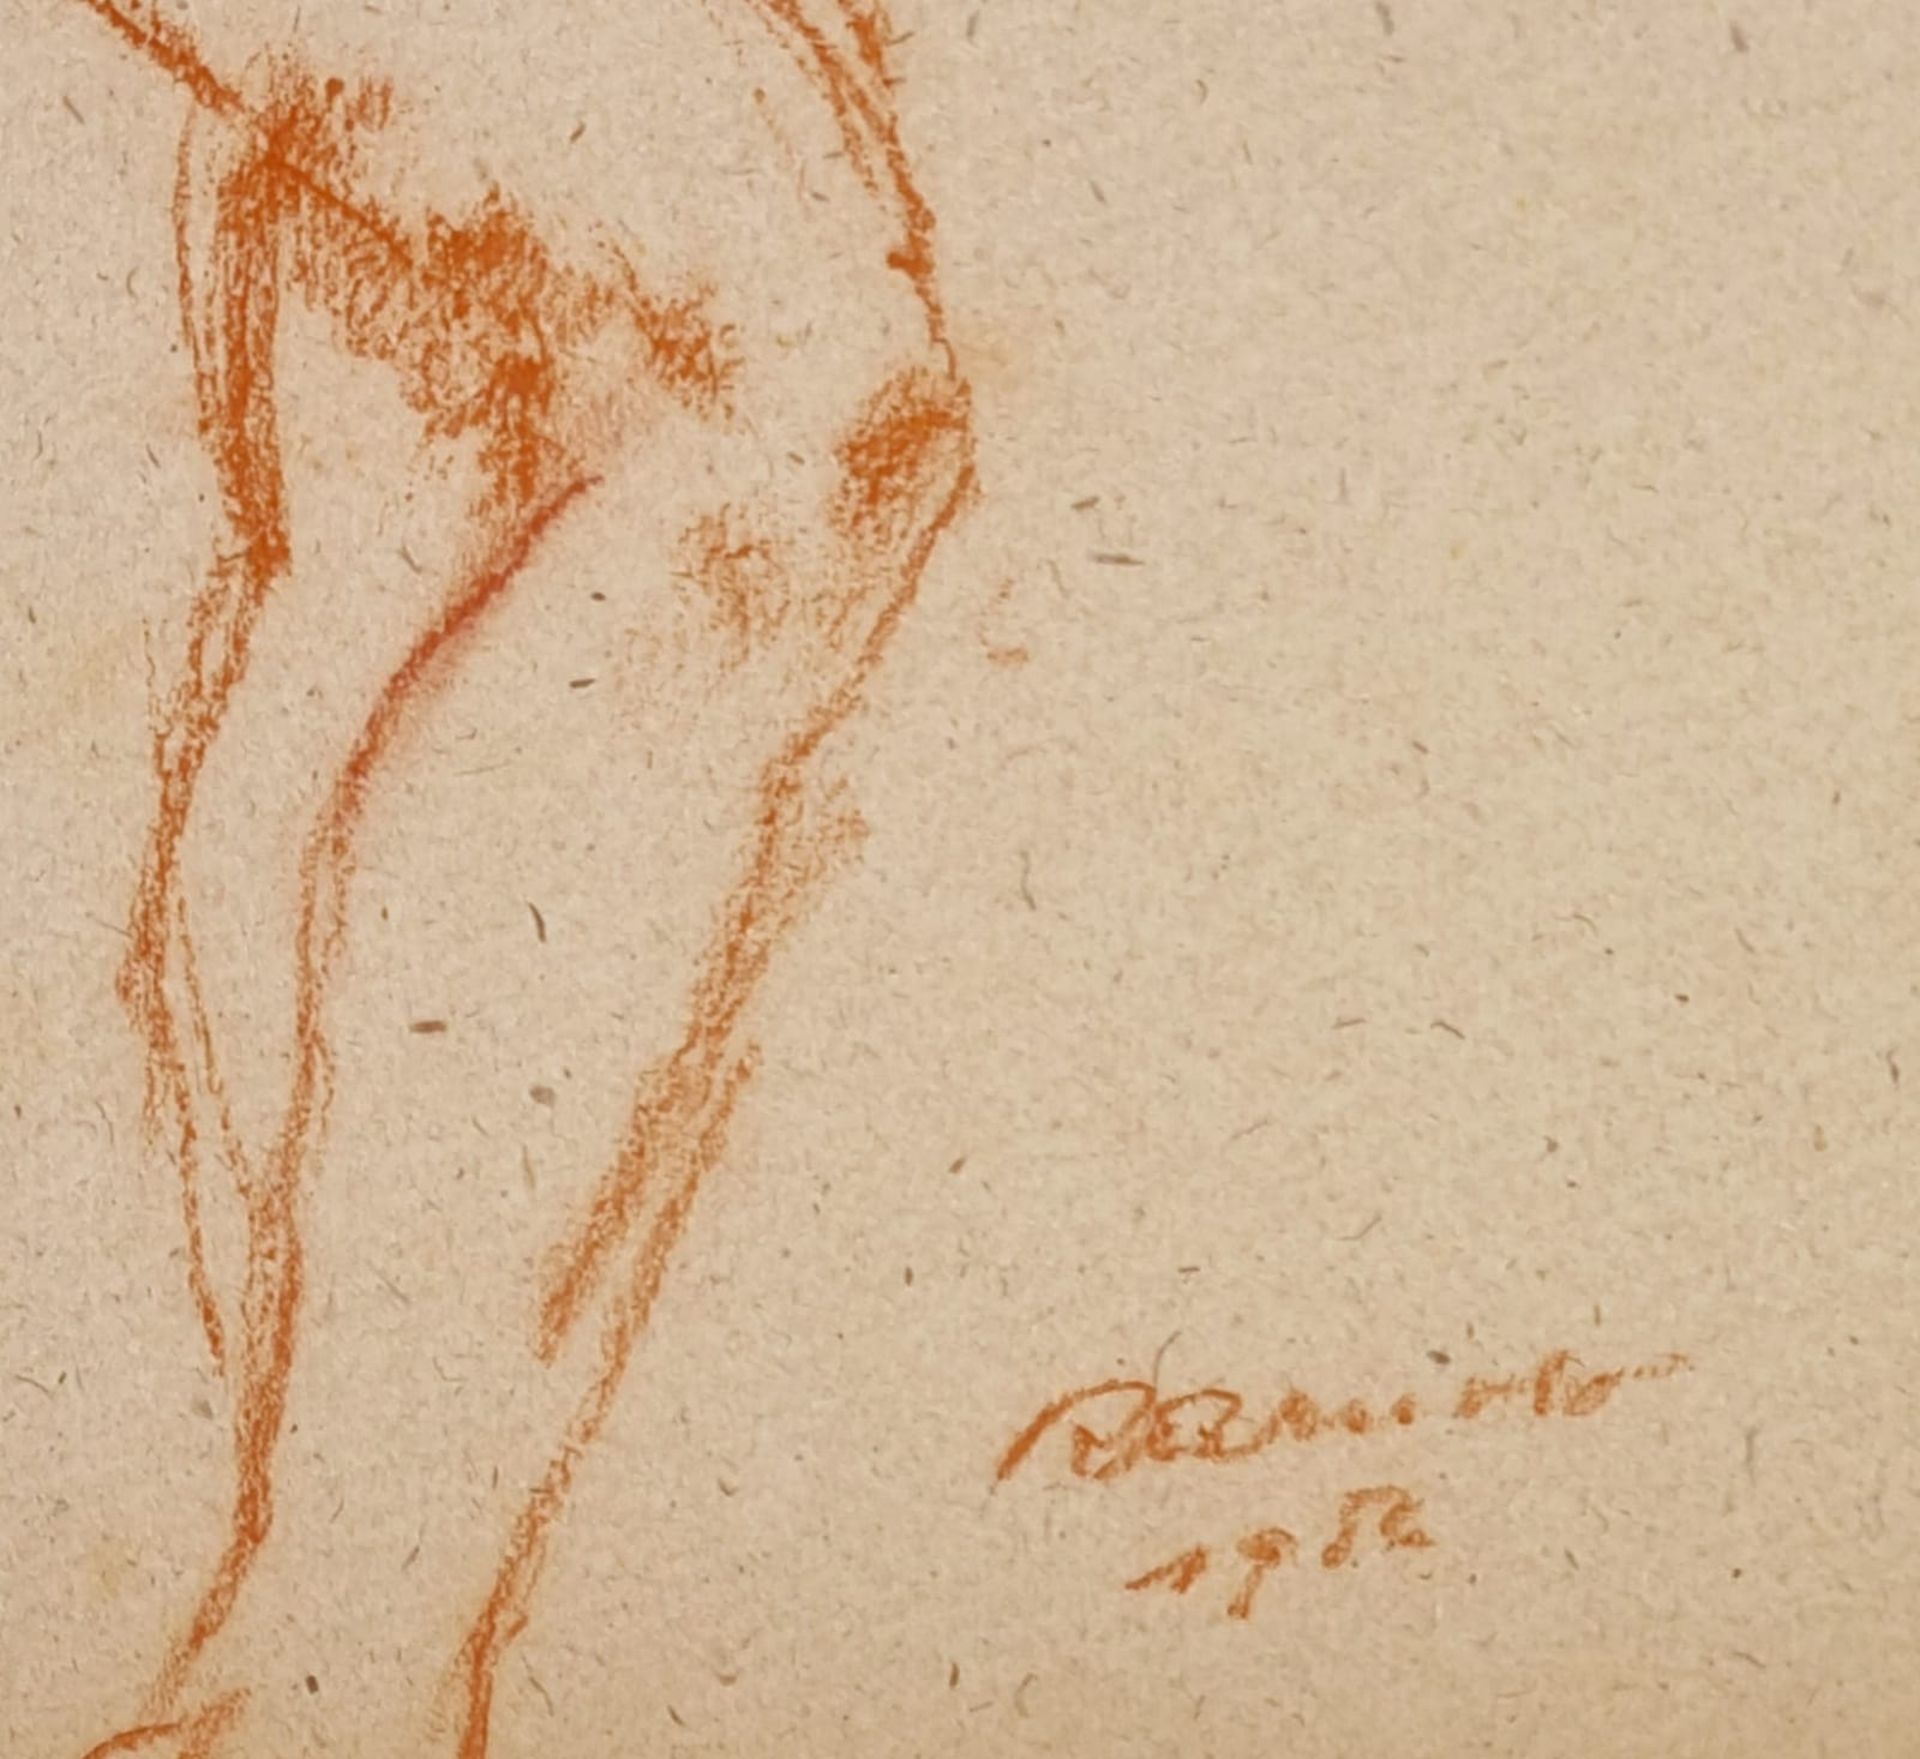 Rudolf Arnold (Innsbruck 1881 - 1968),Akt, Rötelzeichnung auf Papier, Größe: 45x31cm, signiert R. A - Bild 2 aus 2